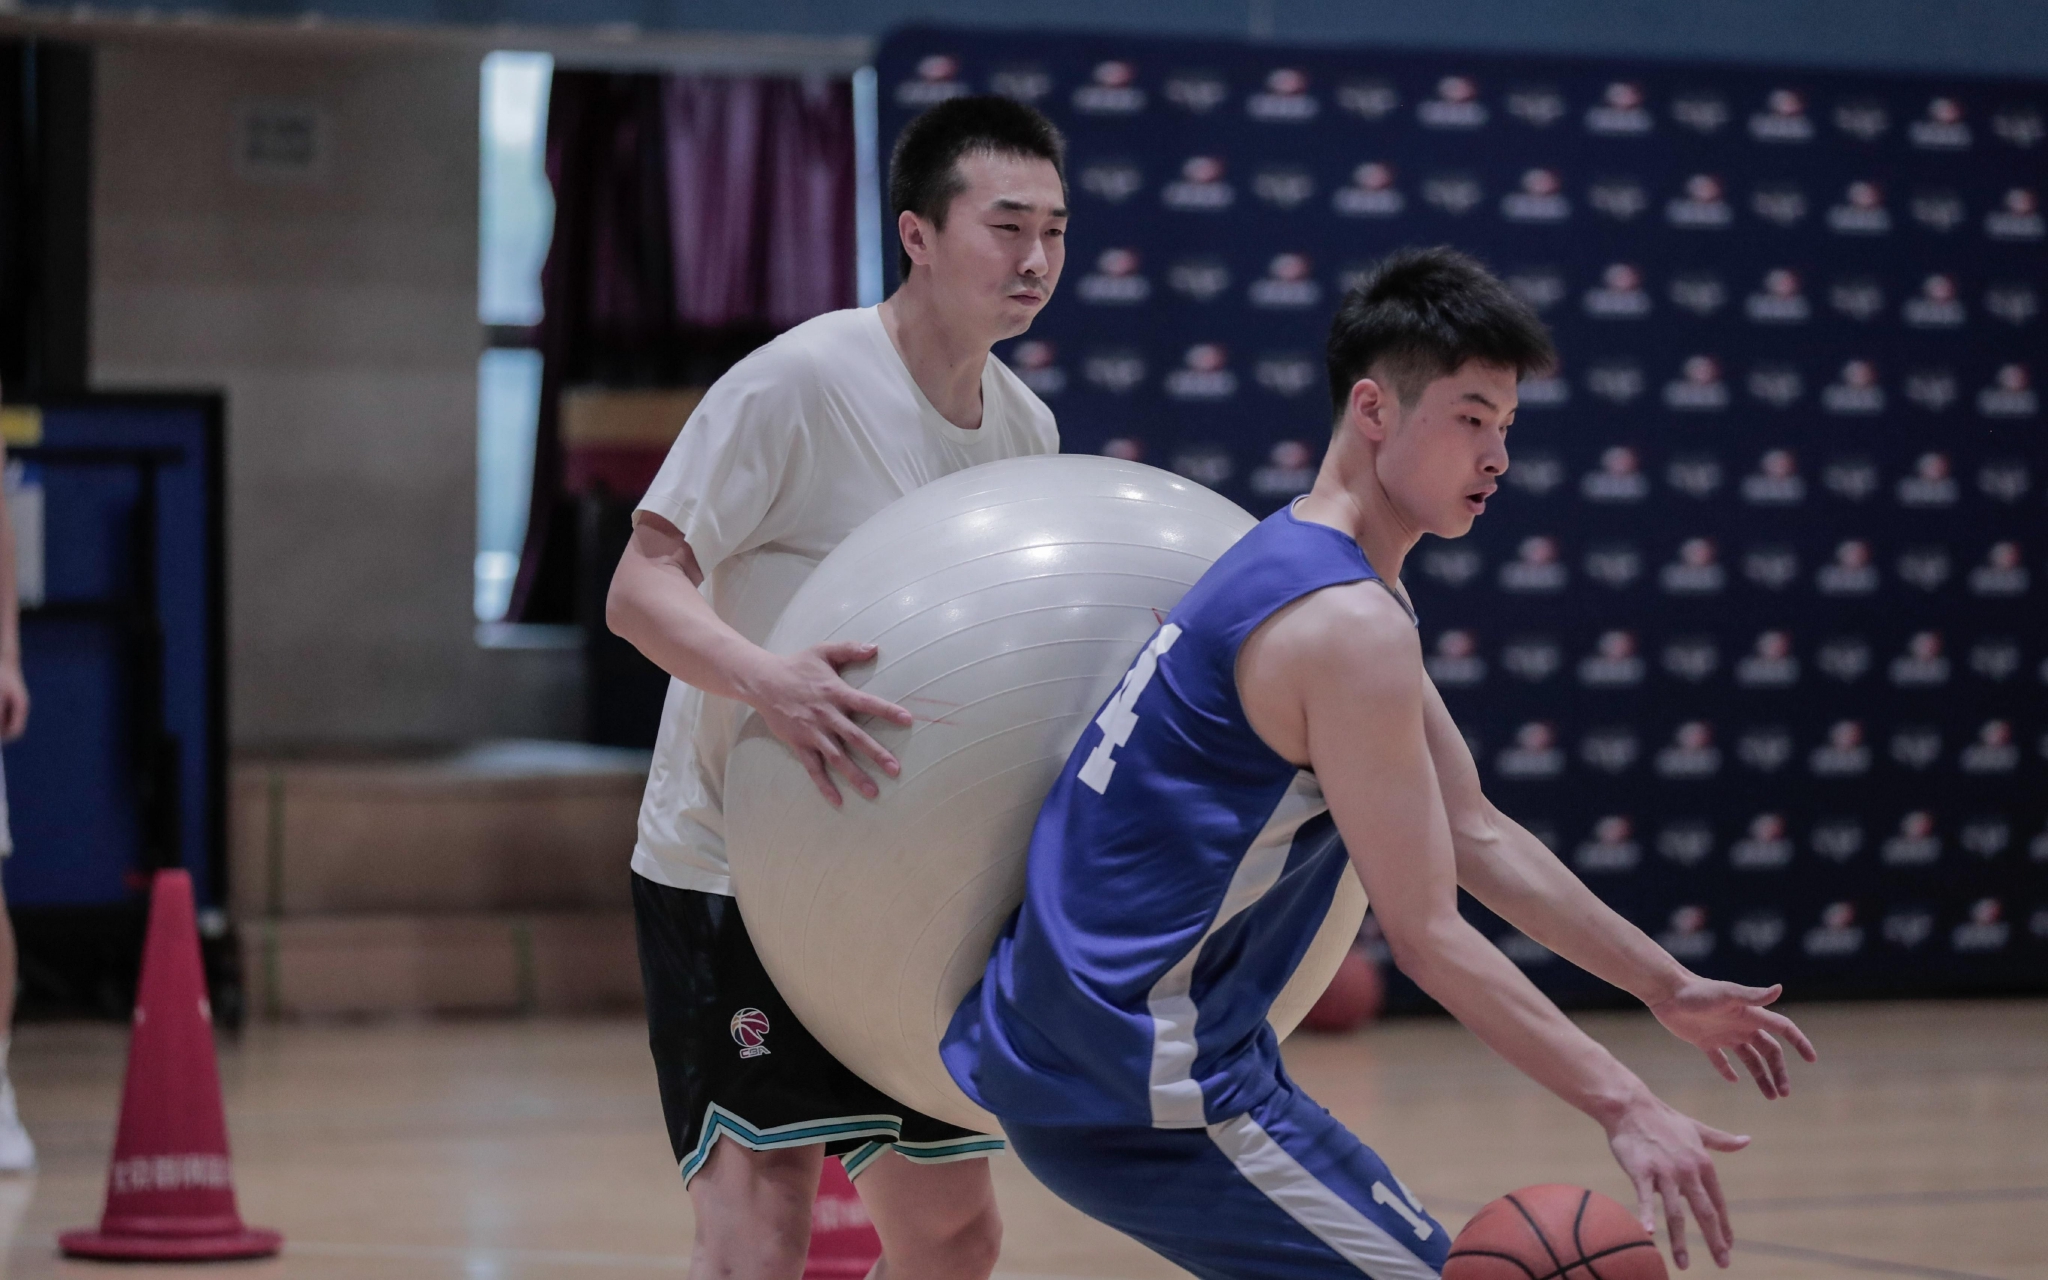 王骁辉用瑜伽球帮助球员训练。